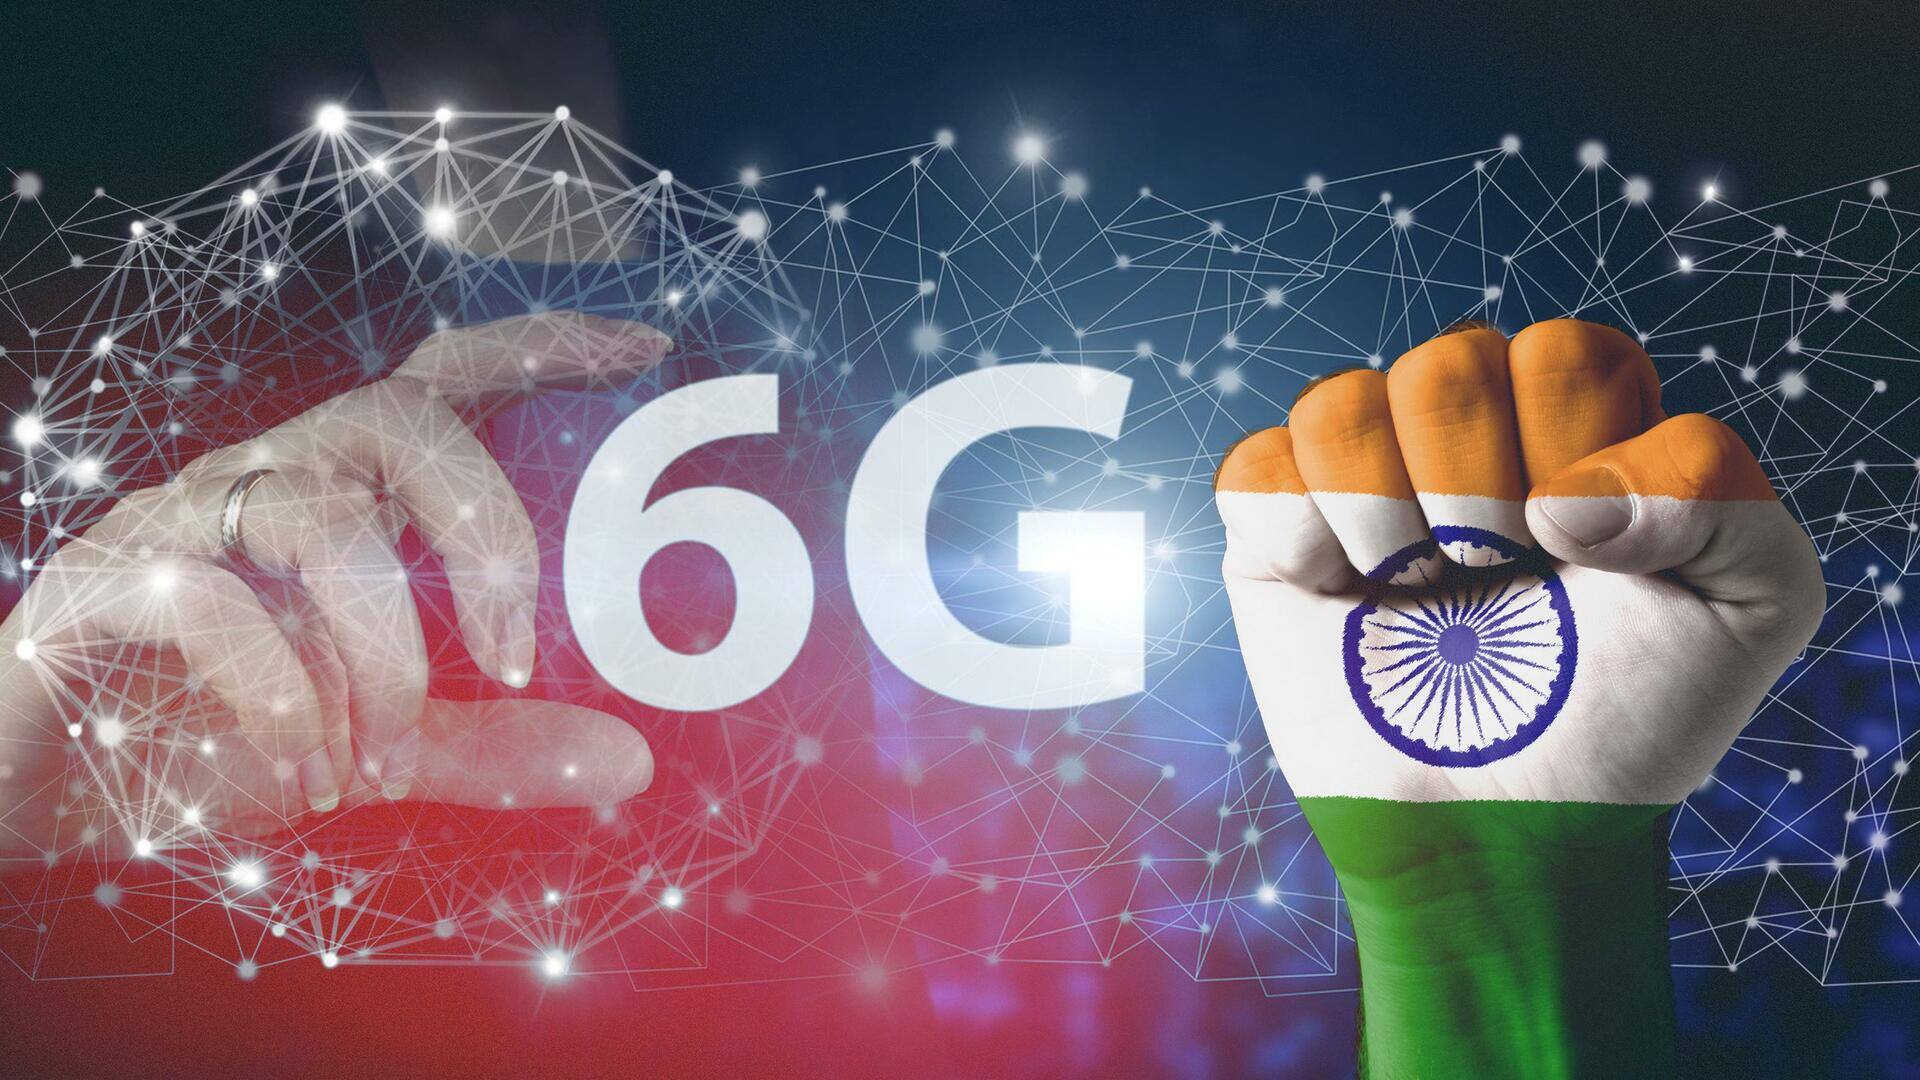 भारत 6G प्रोजेक्ट क्या है और ये कैसे काम करेगा?